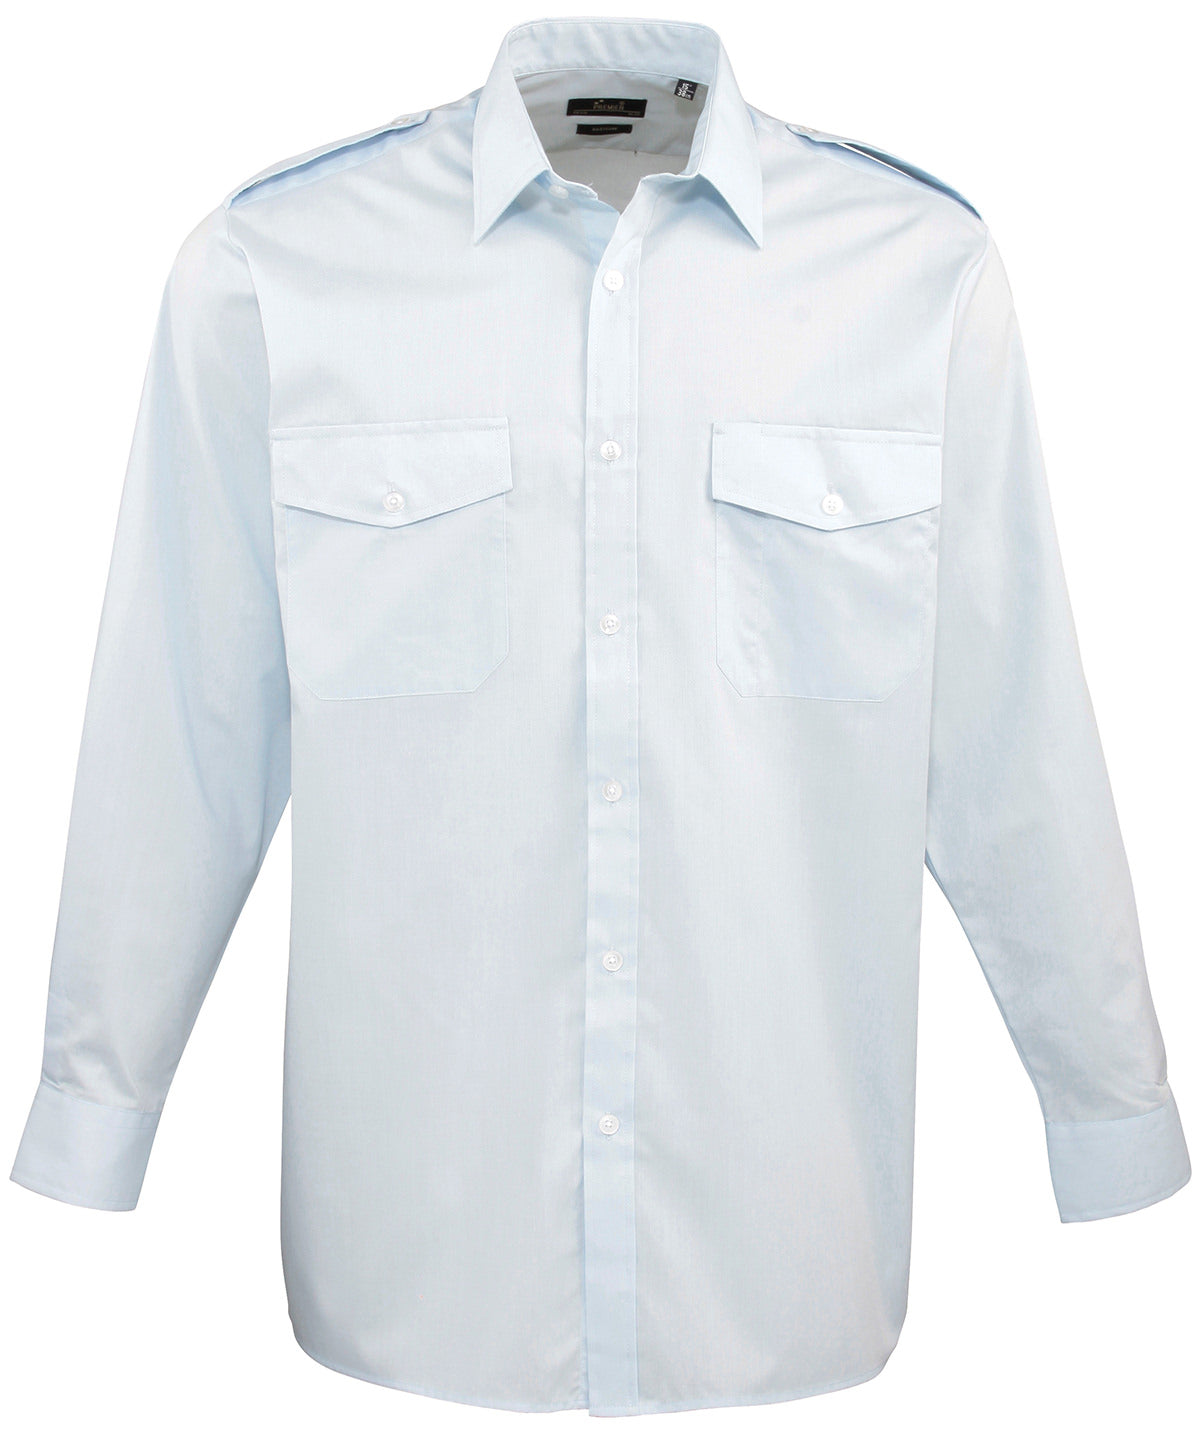 Premier Long sleeve pilot shirt